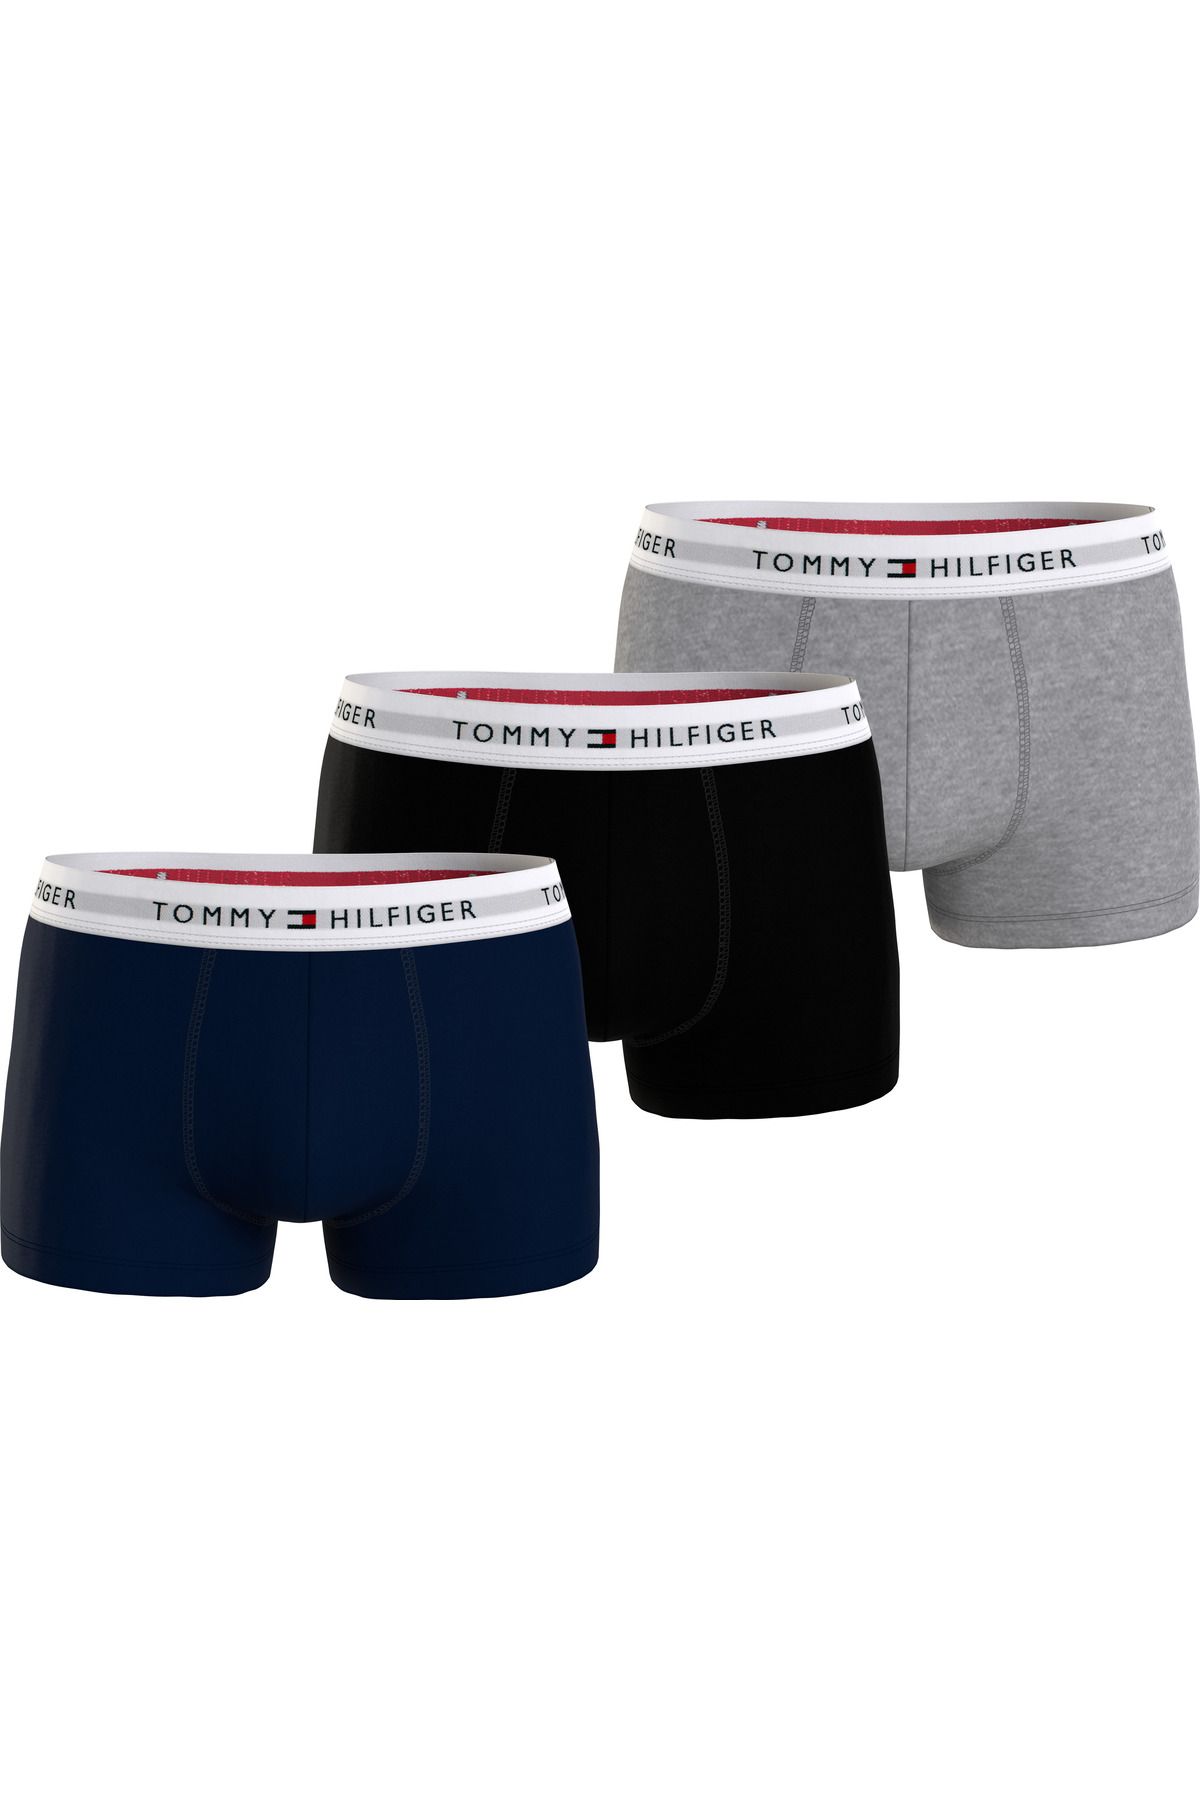 Tommy Hilfiger Erkek Marka Logolu Elastik Bantlı Pamuklu Günlük Kullanıma Uygun Lacivert-gri-siyah Boxer Um0um02761